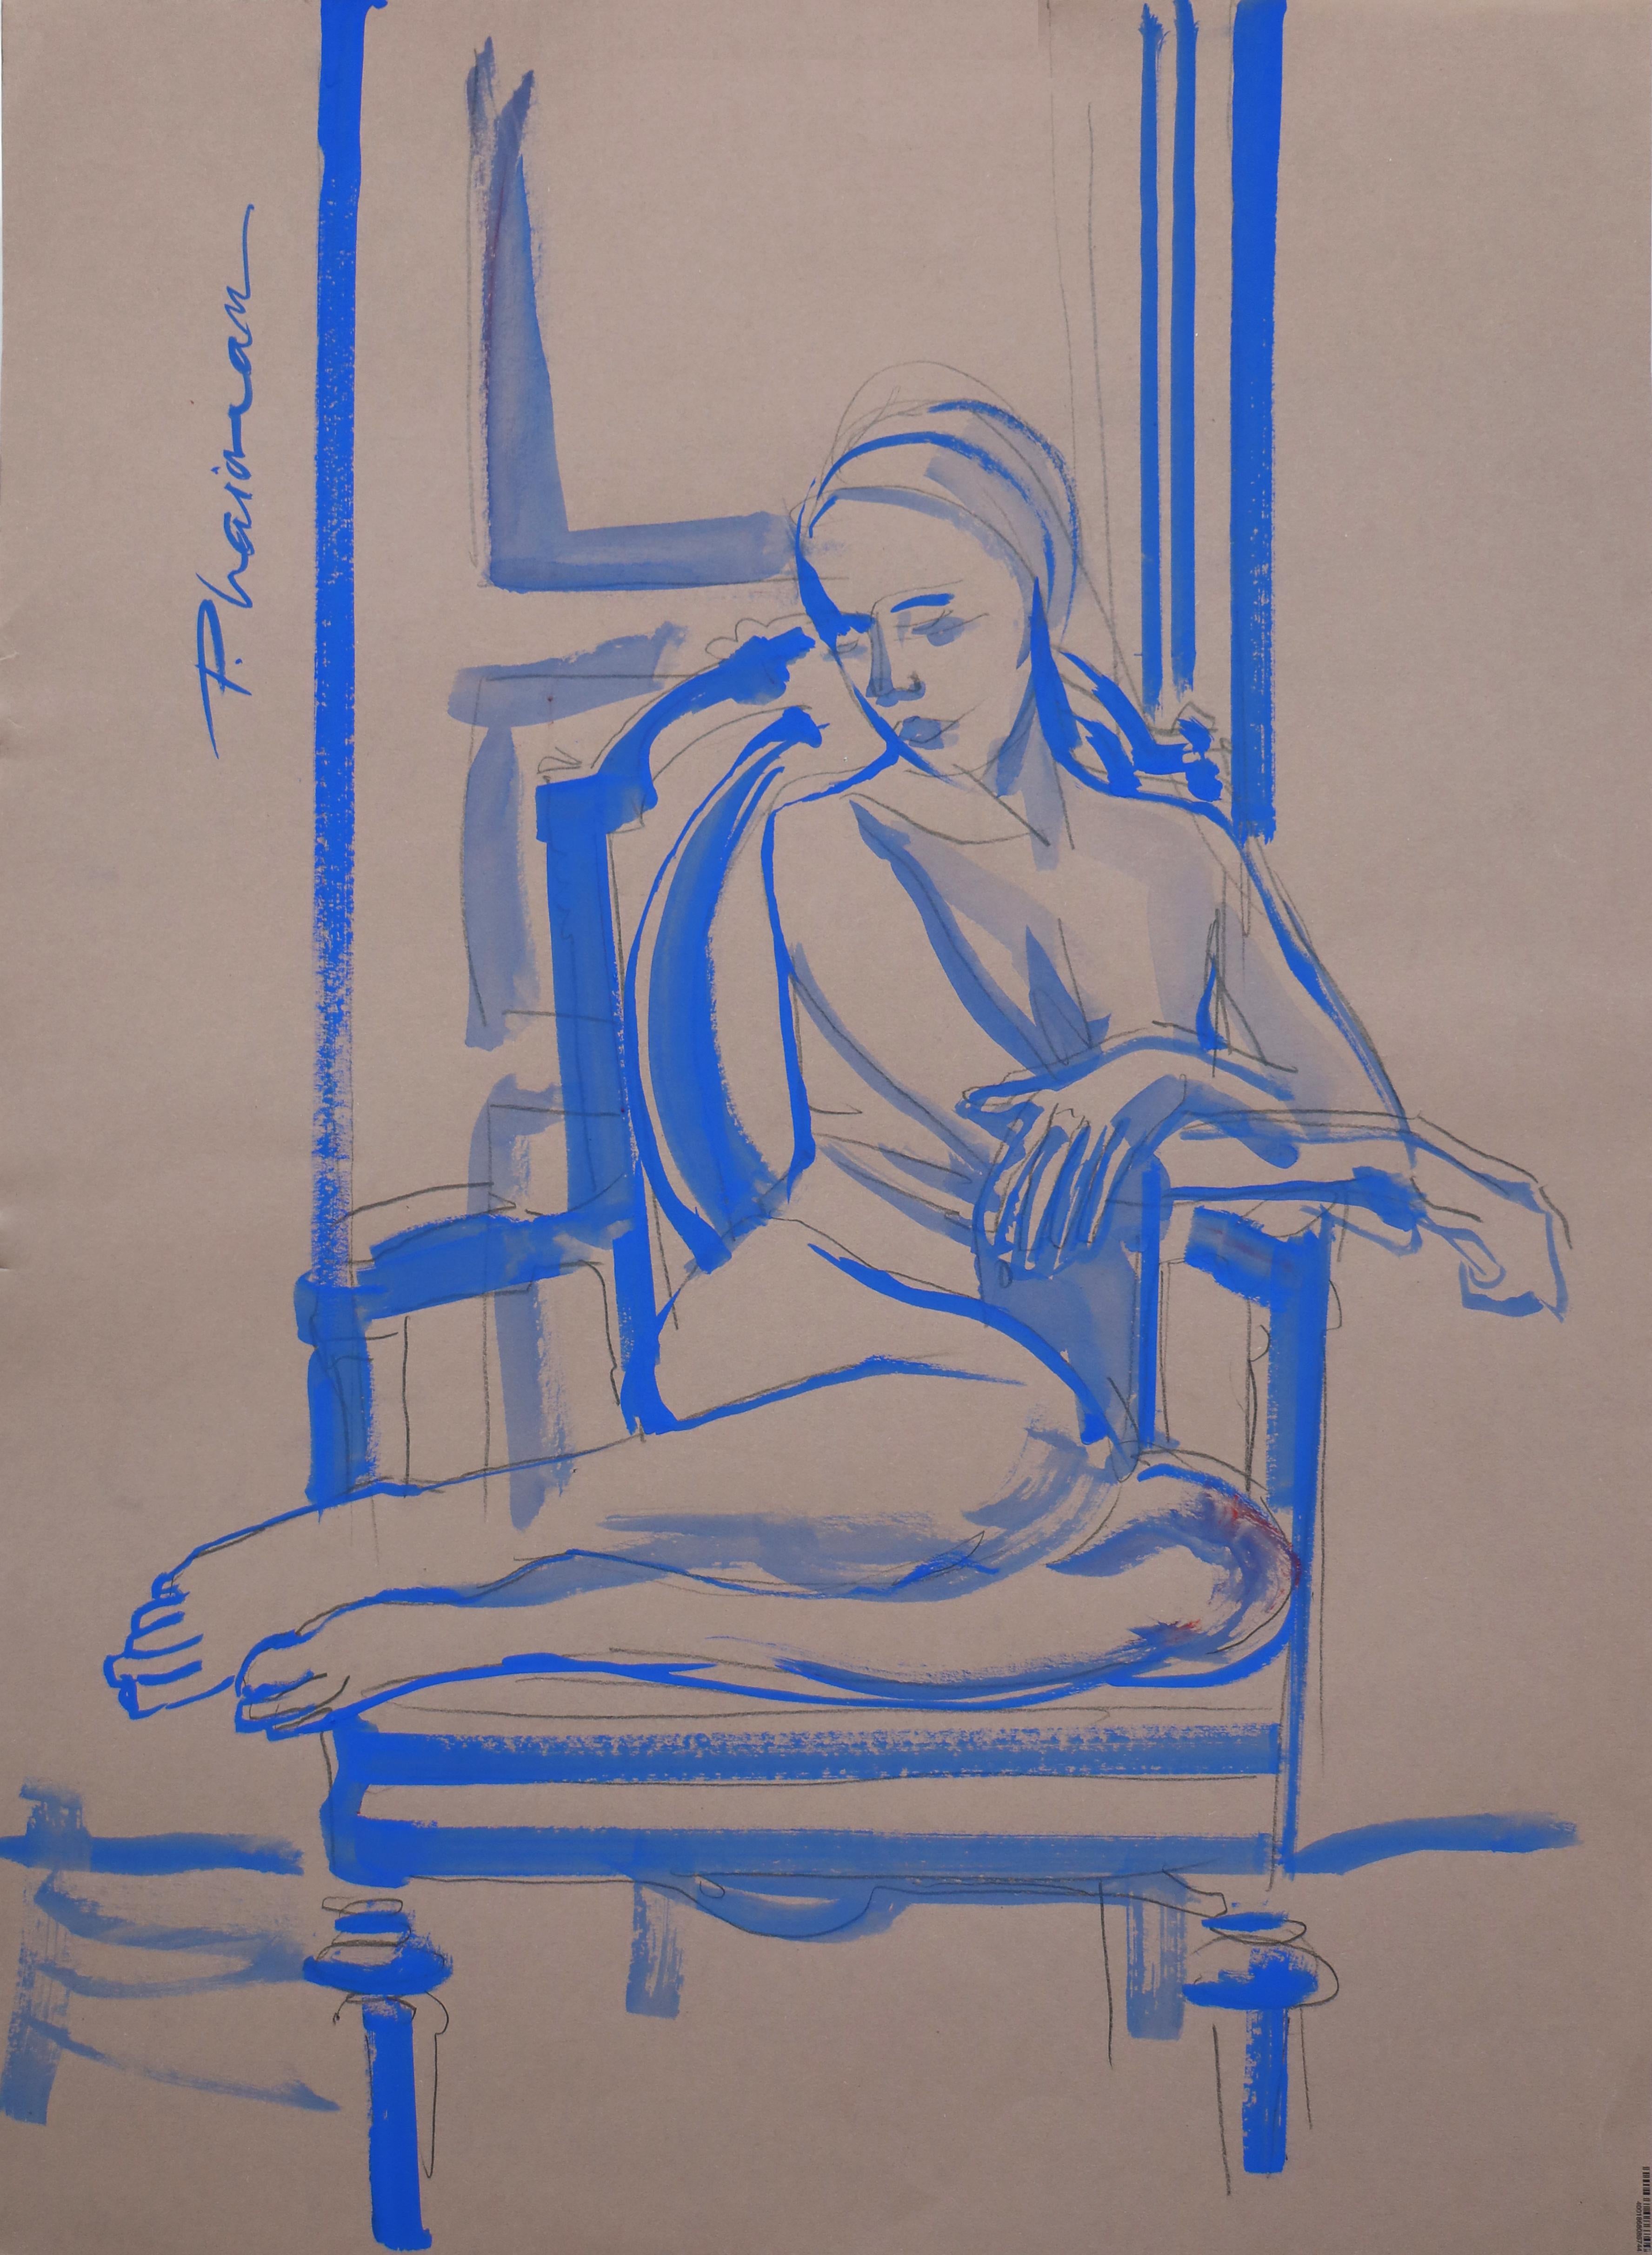 "Nackt in Blau" 
Teil meiner Serie Nude in Interior.
Weiblicher Akt, ultramarinblaue Tempera auf blaugrauem Papier, inspiriert von Matisse.
70x50cm / 27.5x19.5in
Versendet in einer Rolle aus Florida, USA, gut verpackt.
